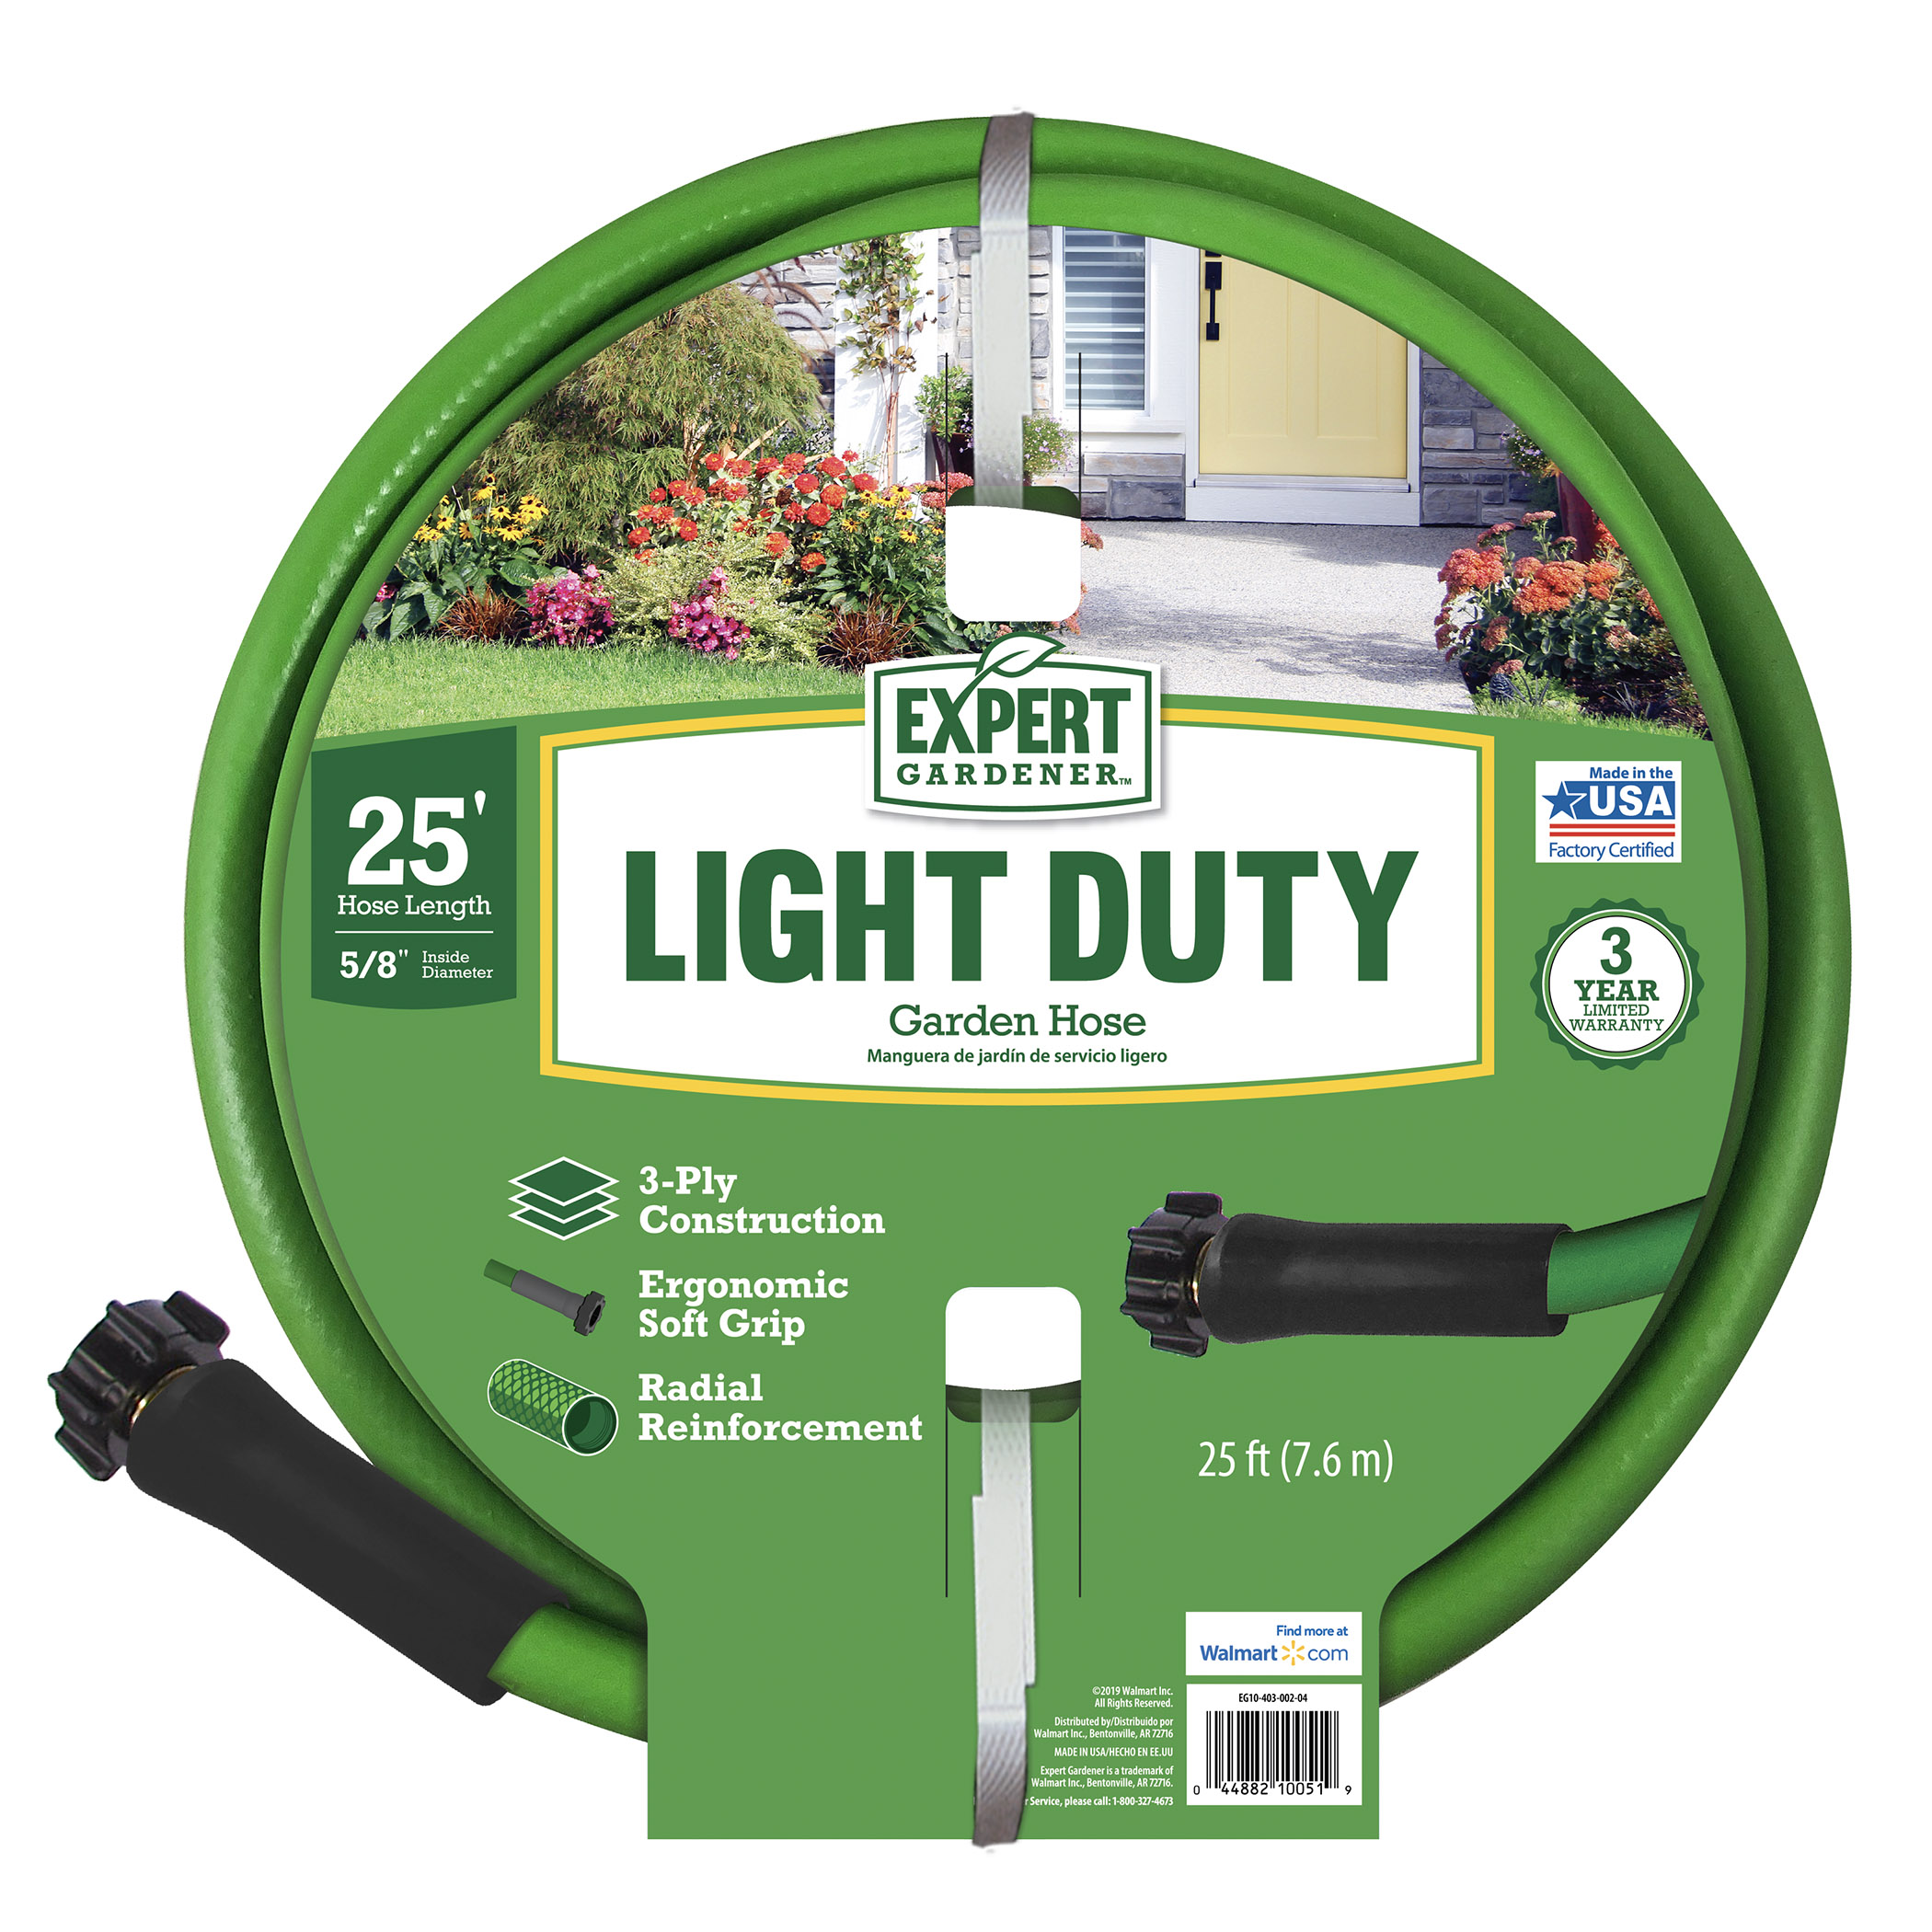 Expert Gardener Light Duty 5/8" x 25' Garden Hose - image 1 of 6